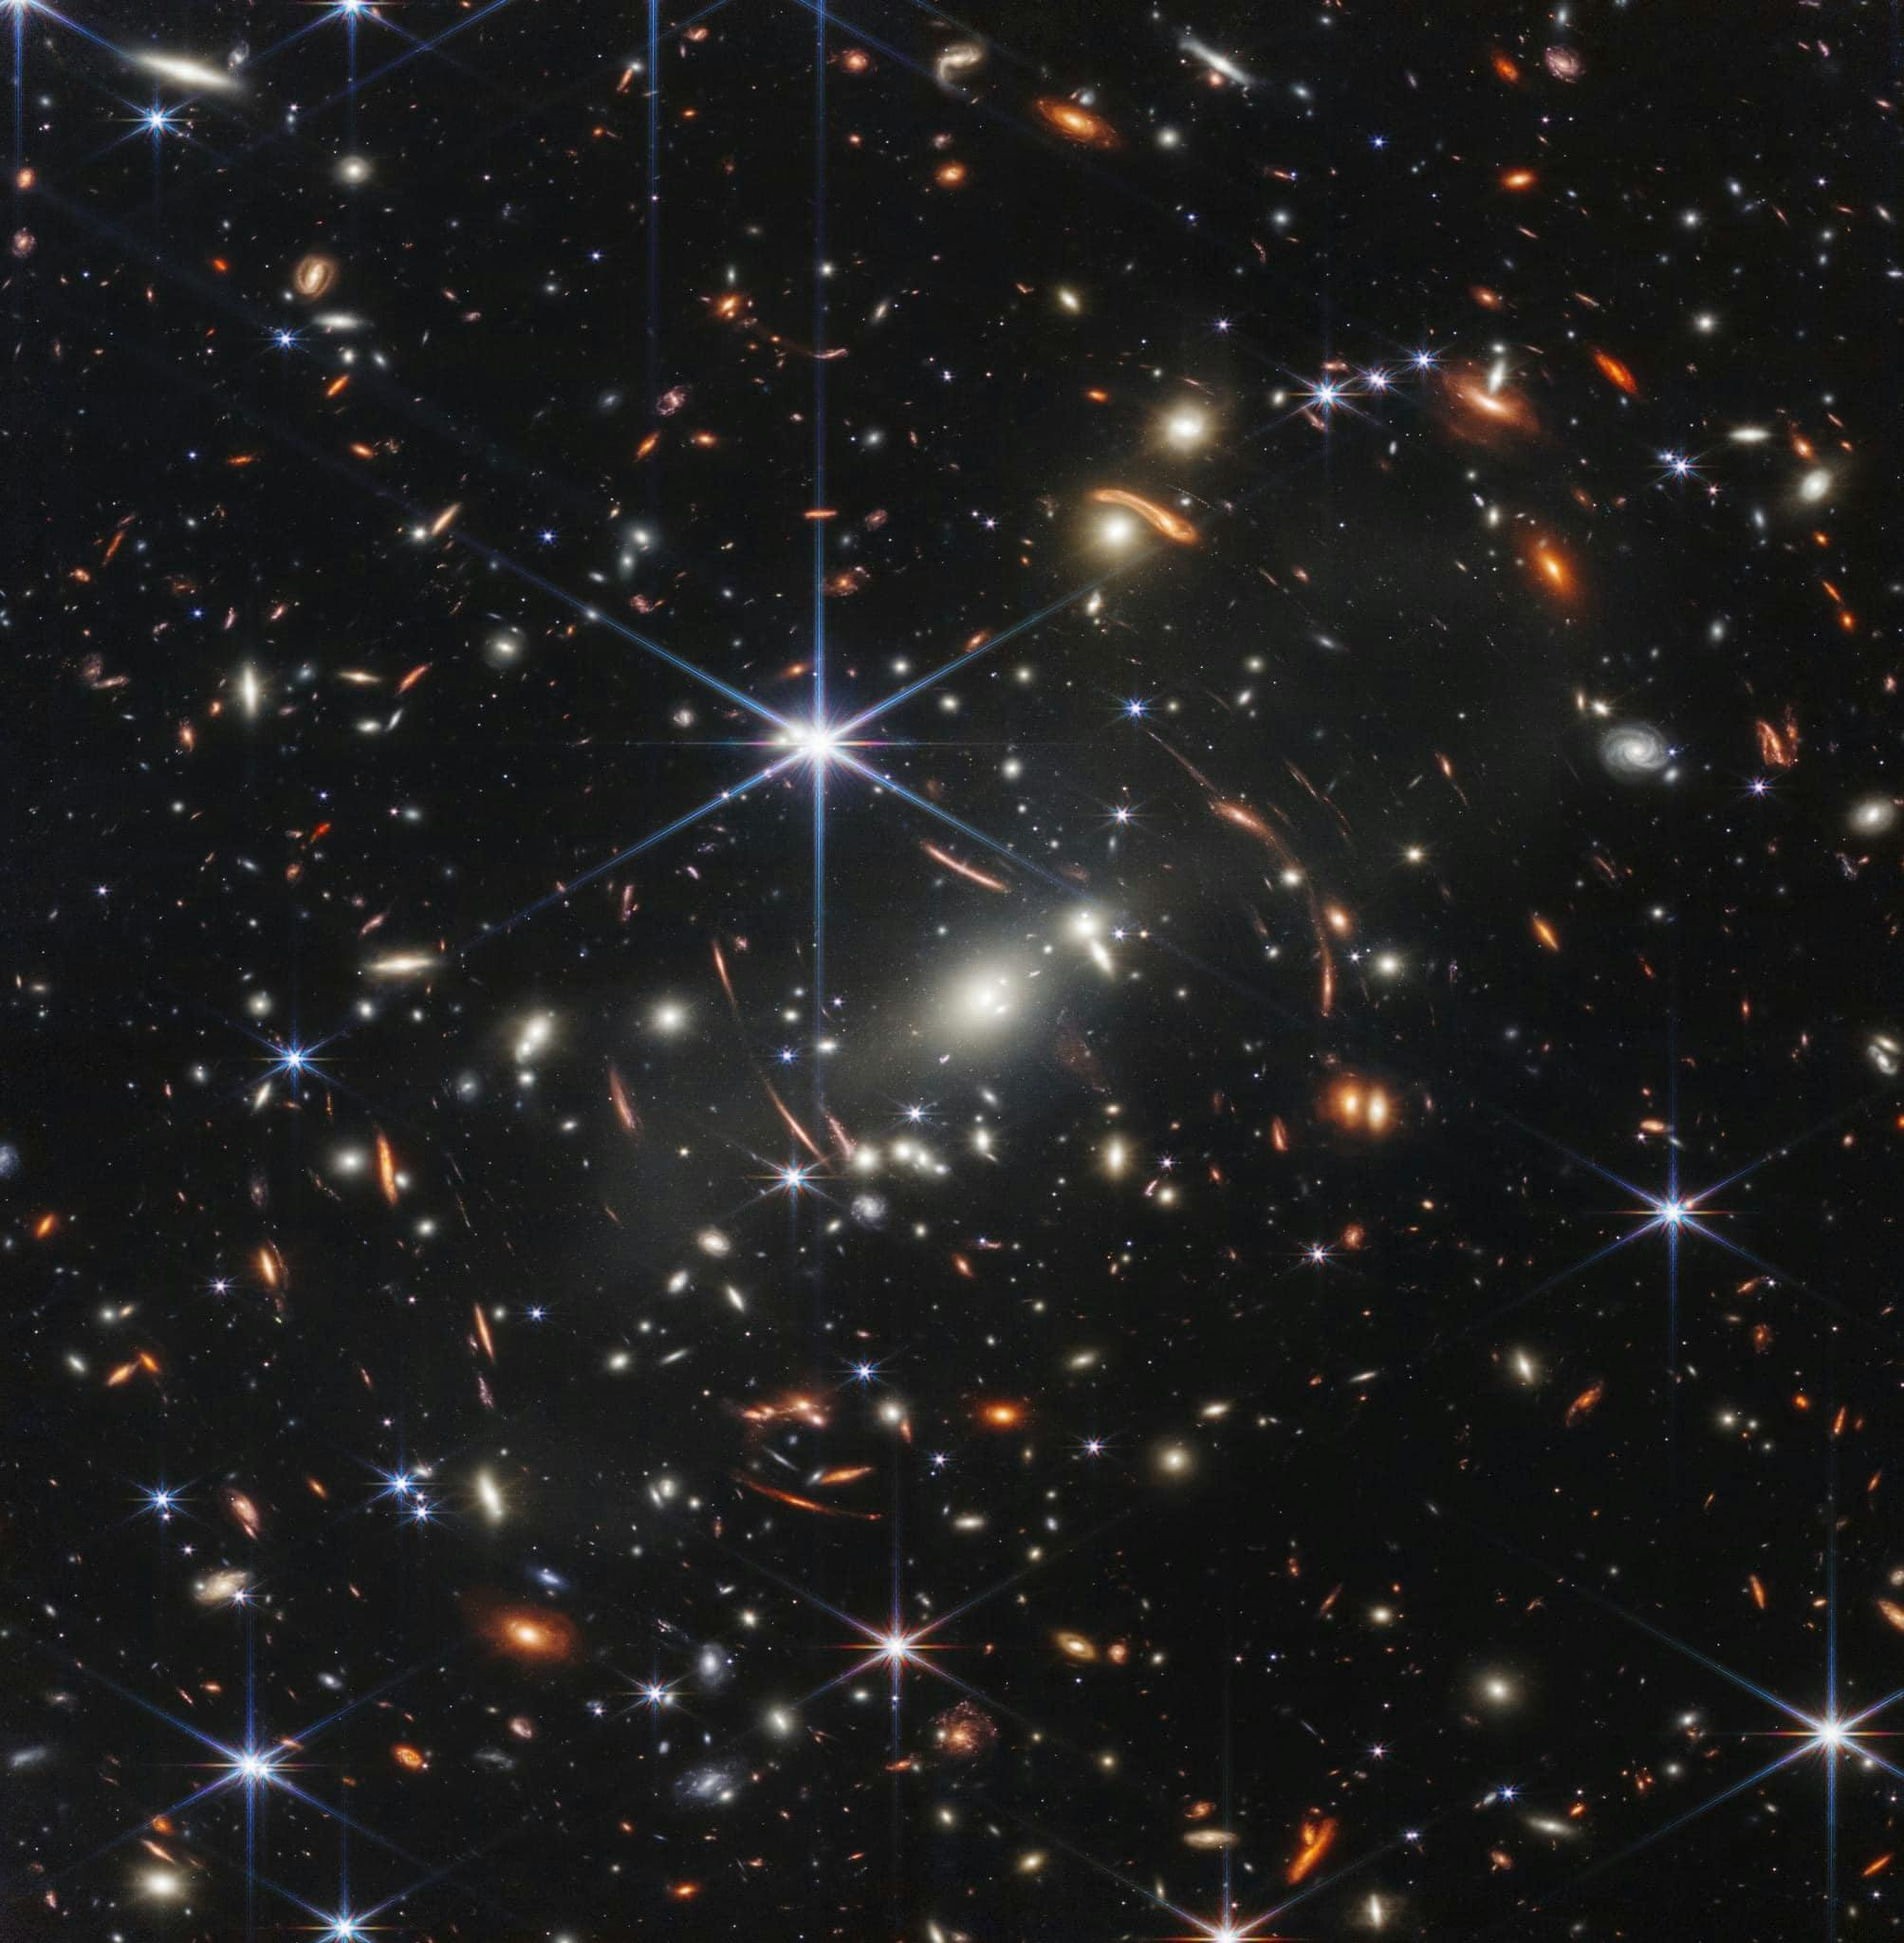 Nueva imagen captada por el James Webb Telescope